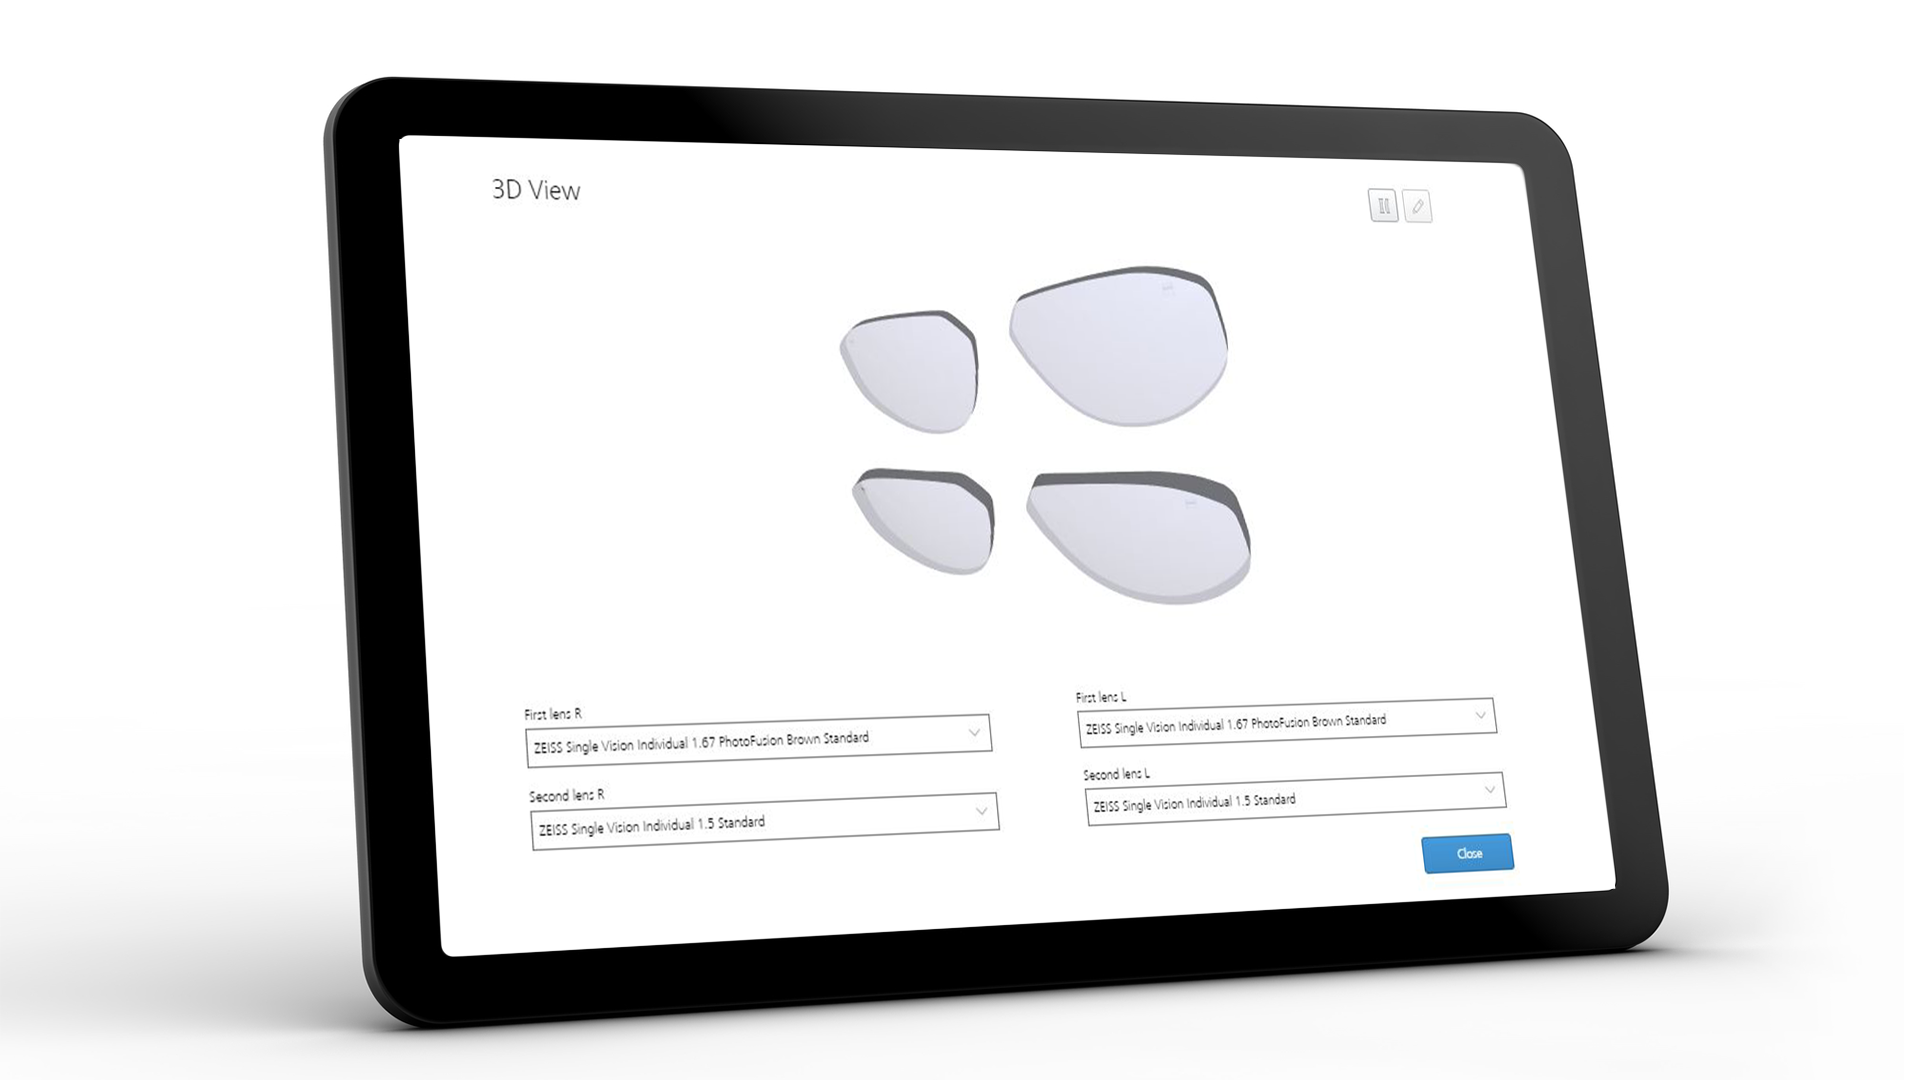 Schermo del tablet che mostra l'interfaccia ZEISS VISUSTORE per la vista 3D 